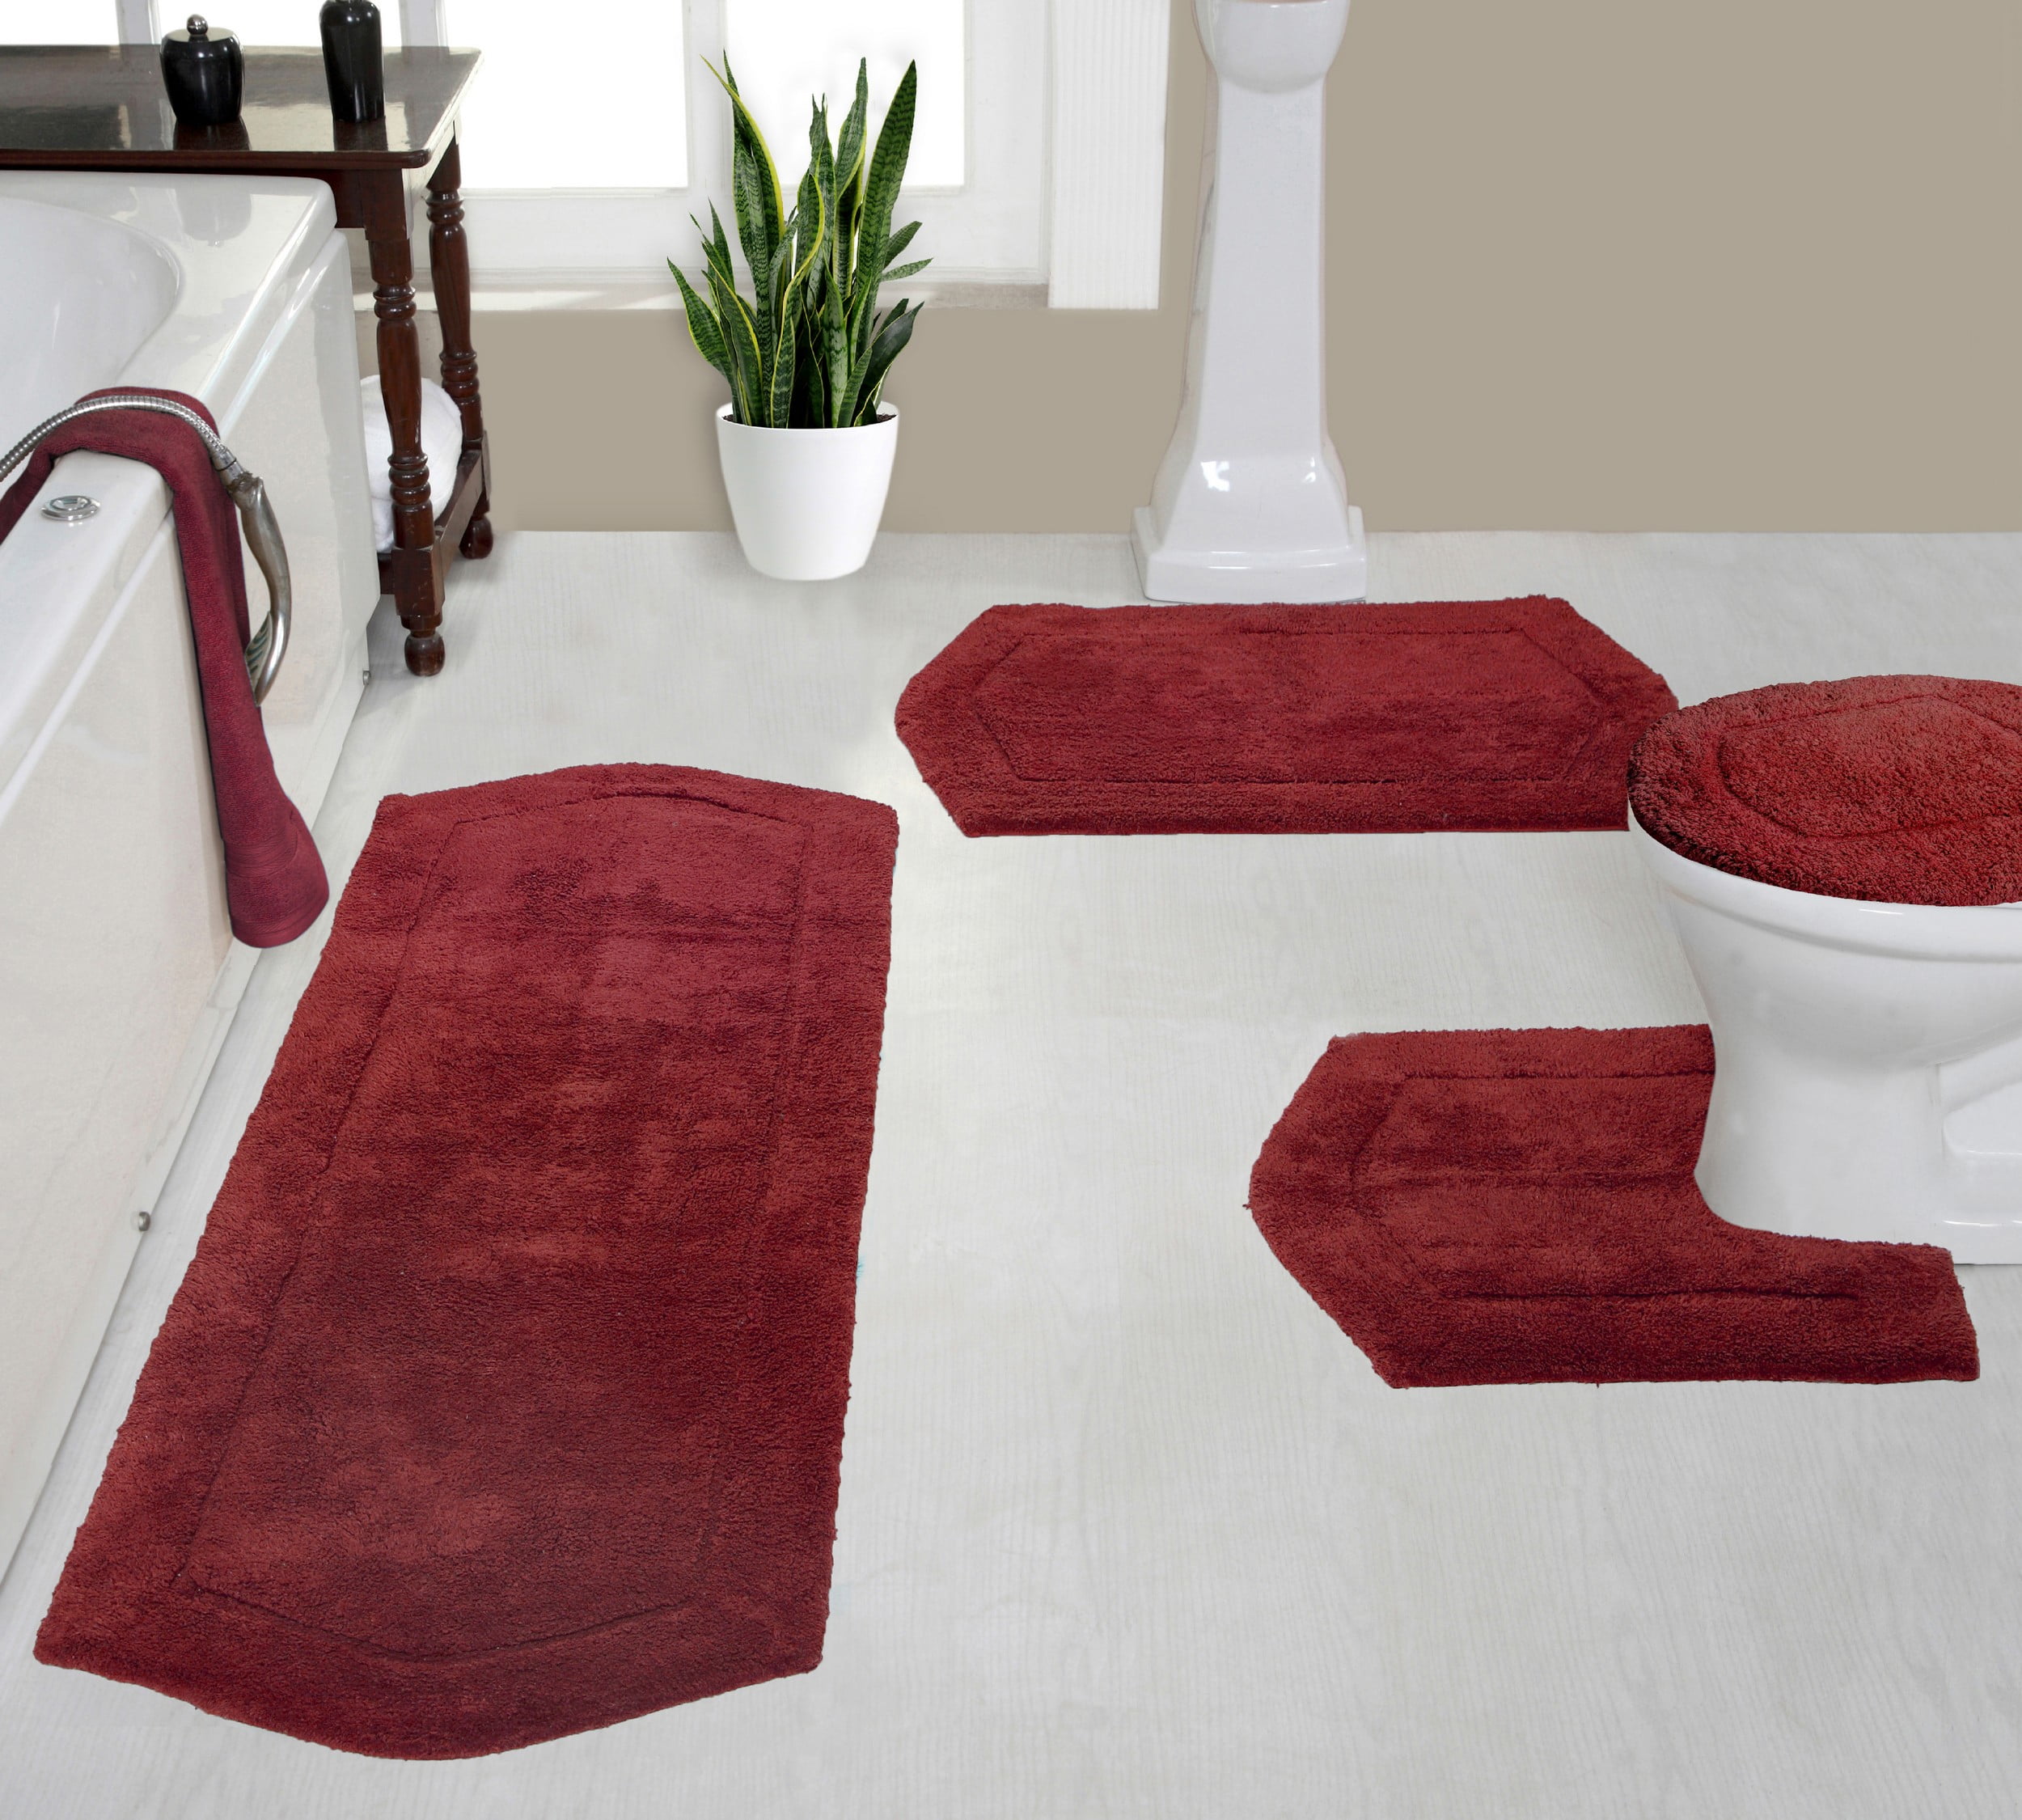 Hot Sale Soft Diatom Mud Area Rugs Bathroom Toilet Water